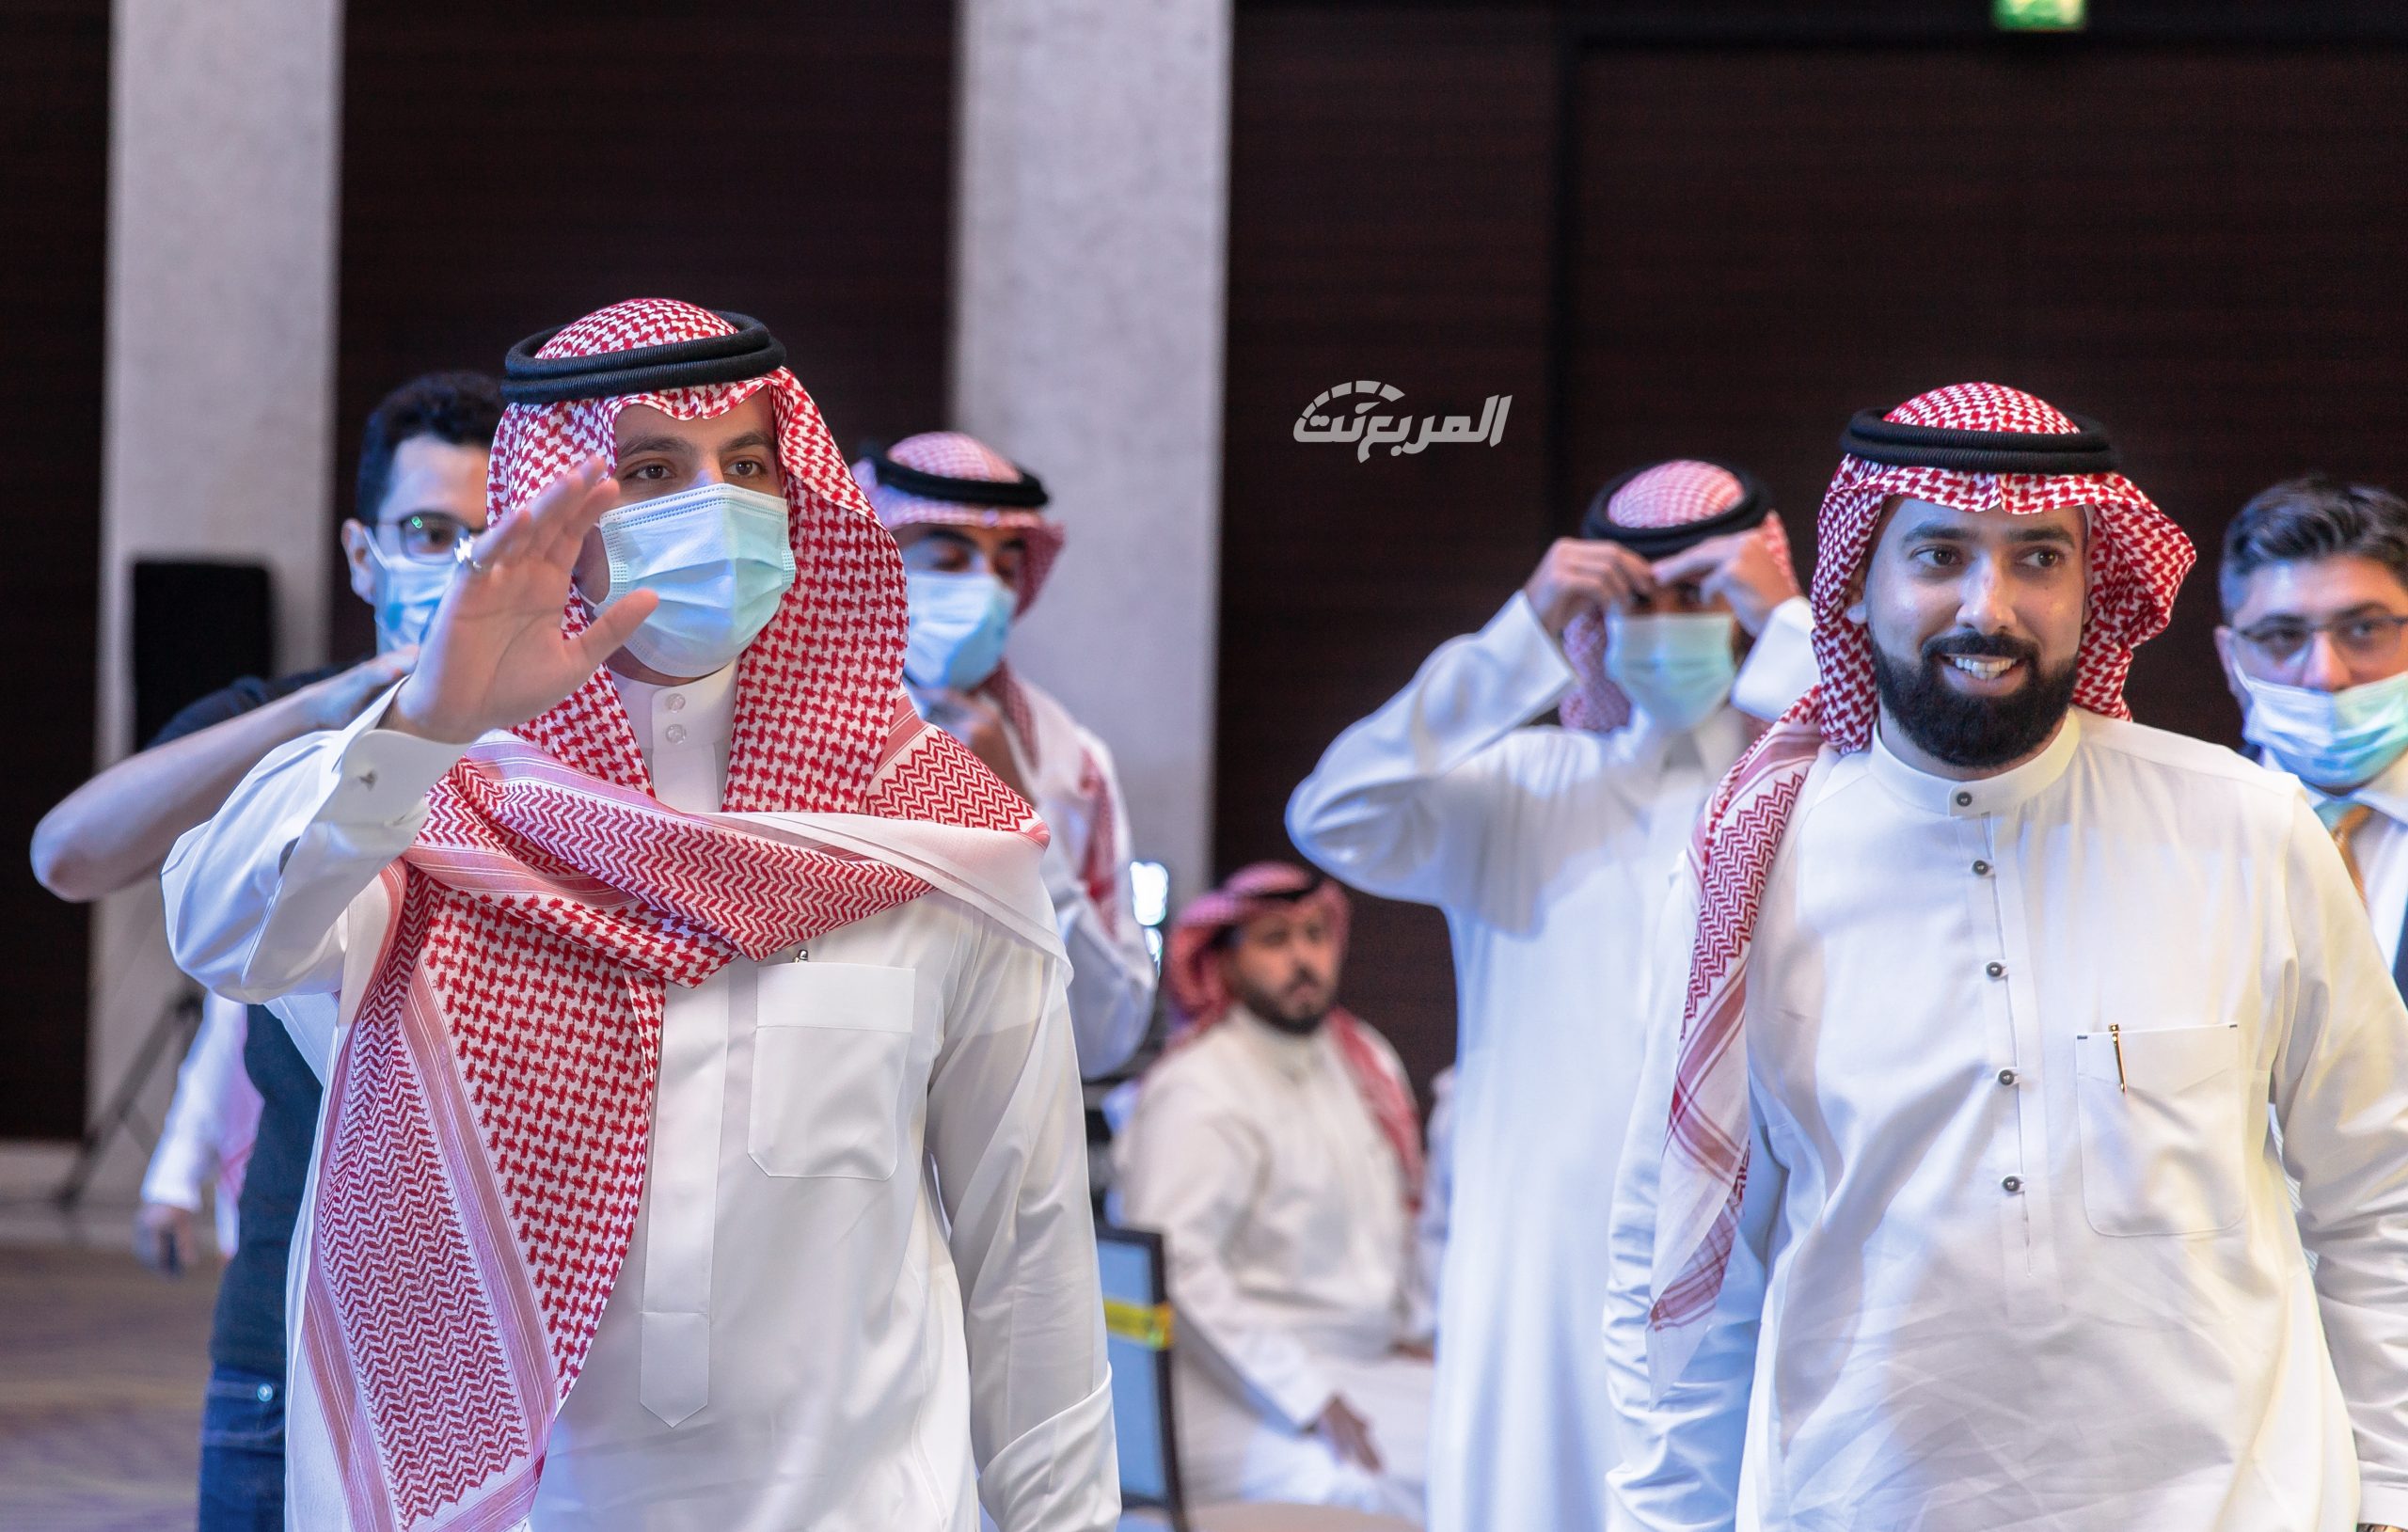 صور من حفل تدشين هوية الوفاق الجديدة ( يلو ) 24